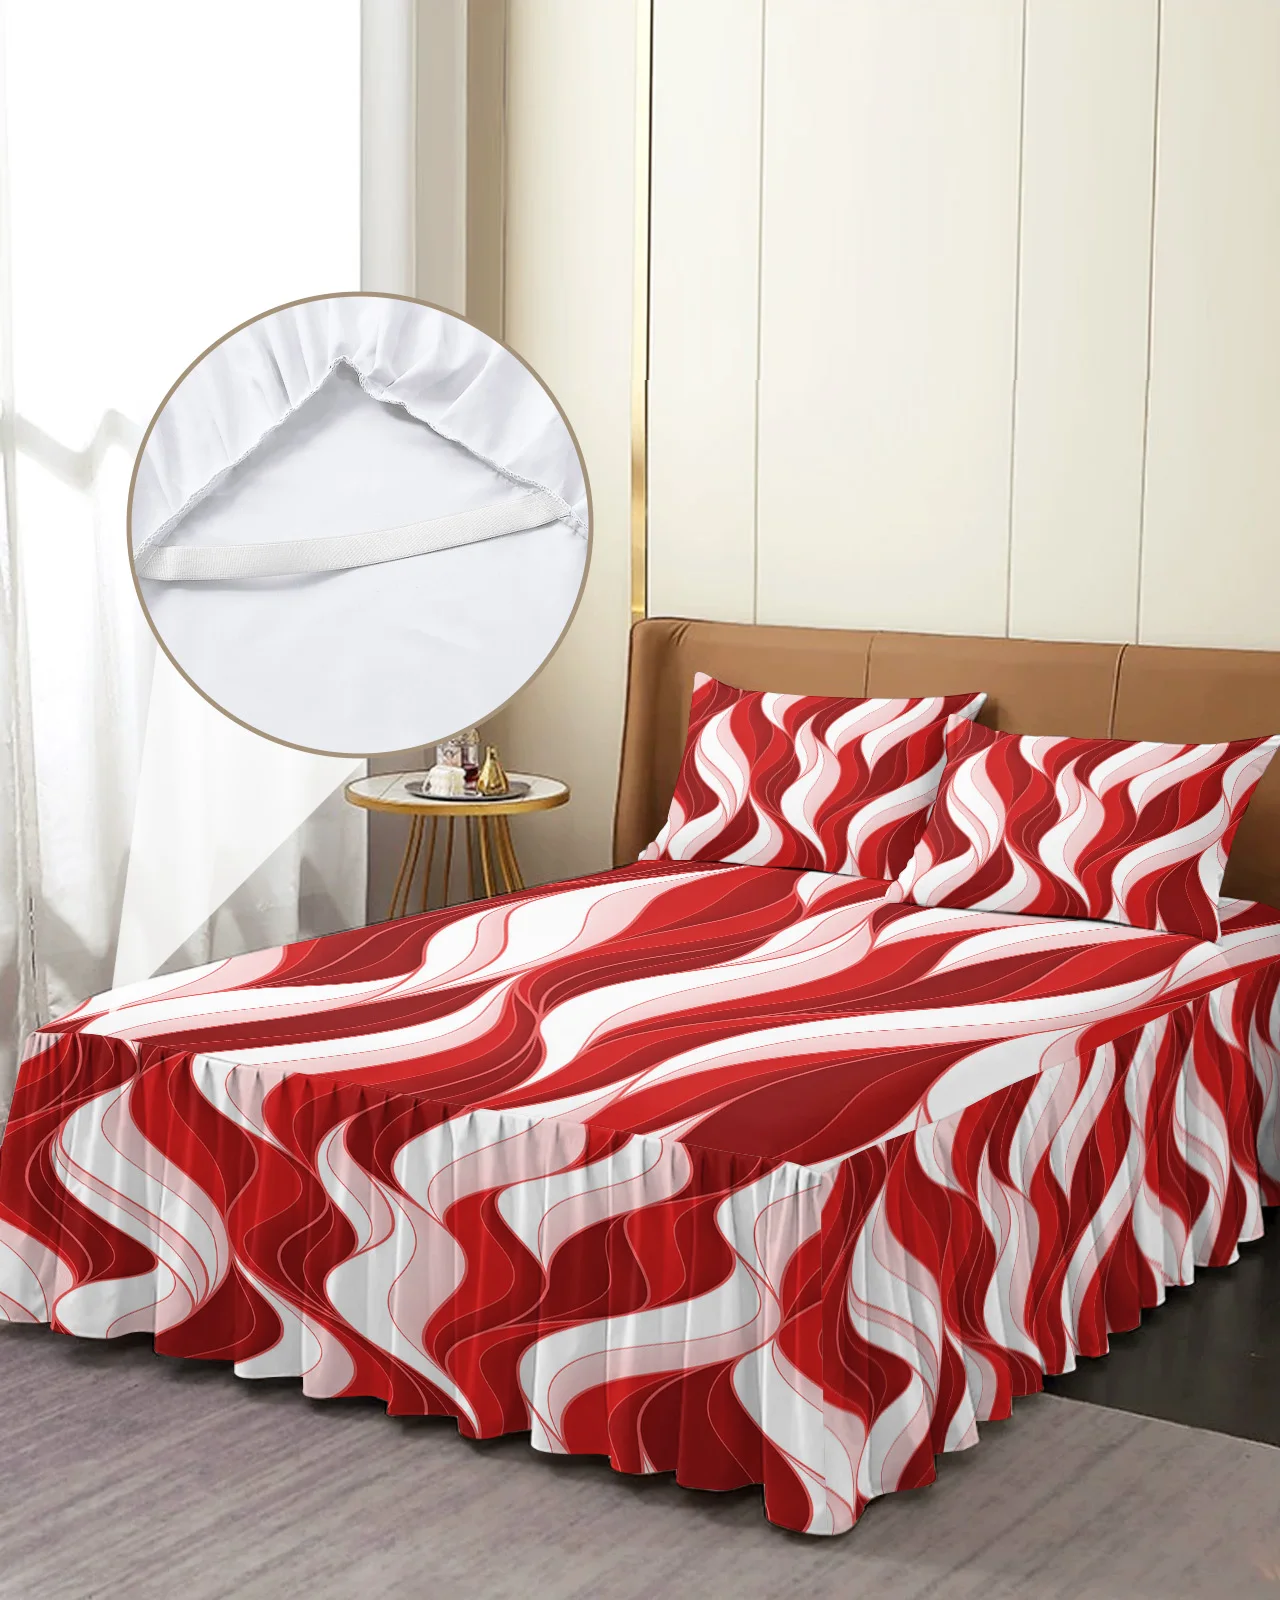 

Красная волна абстрактные линии постельная юбка эластичное постельное белье с наволочками протектор для кровати наматрасник Комплект постельного белья простыня